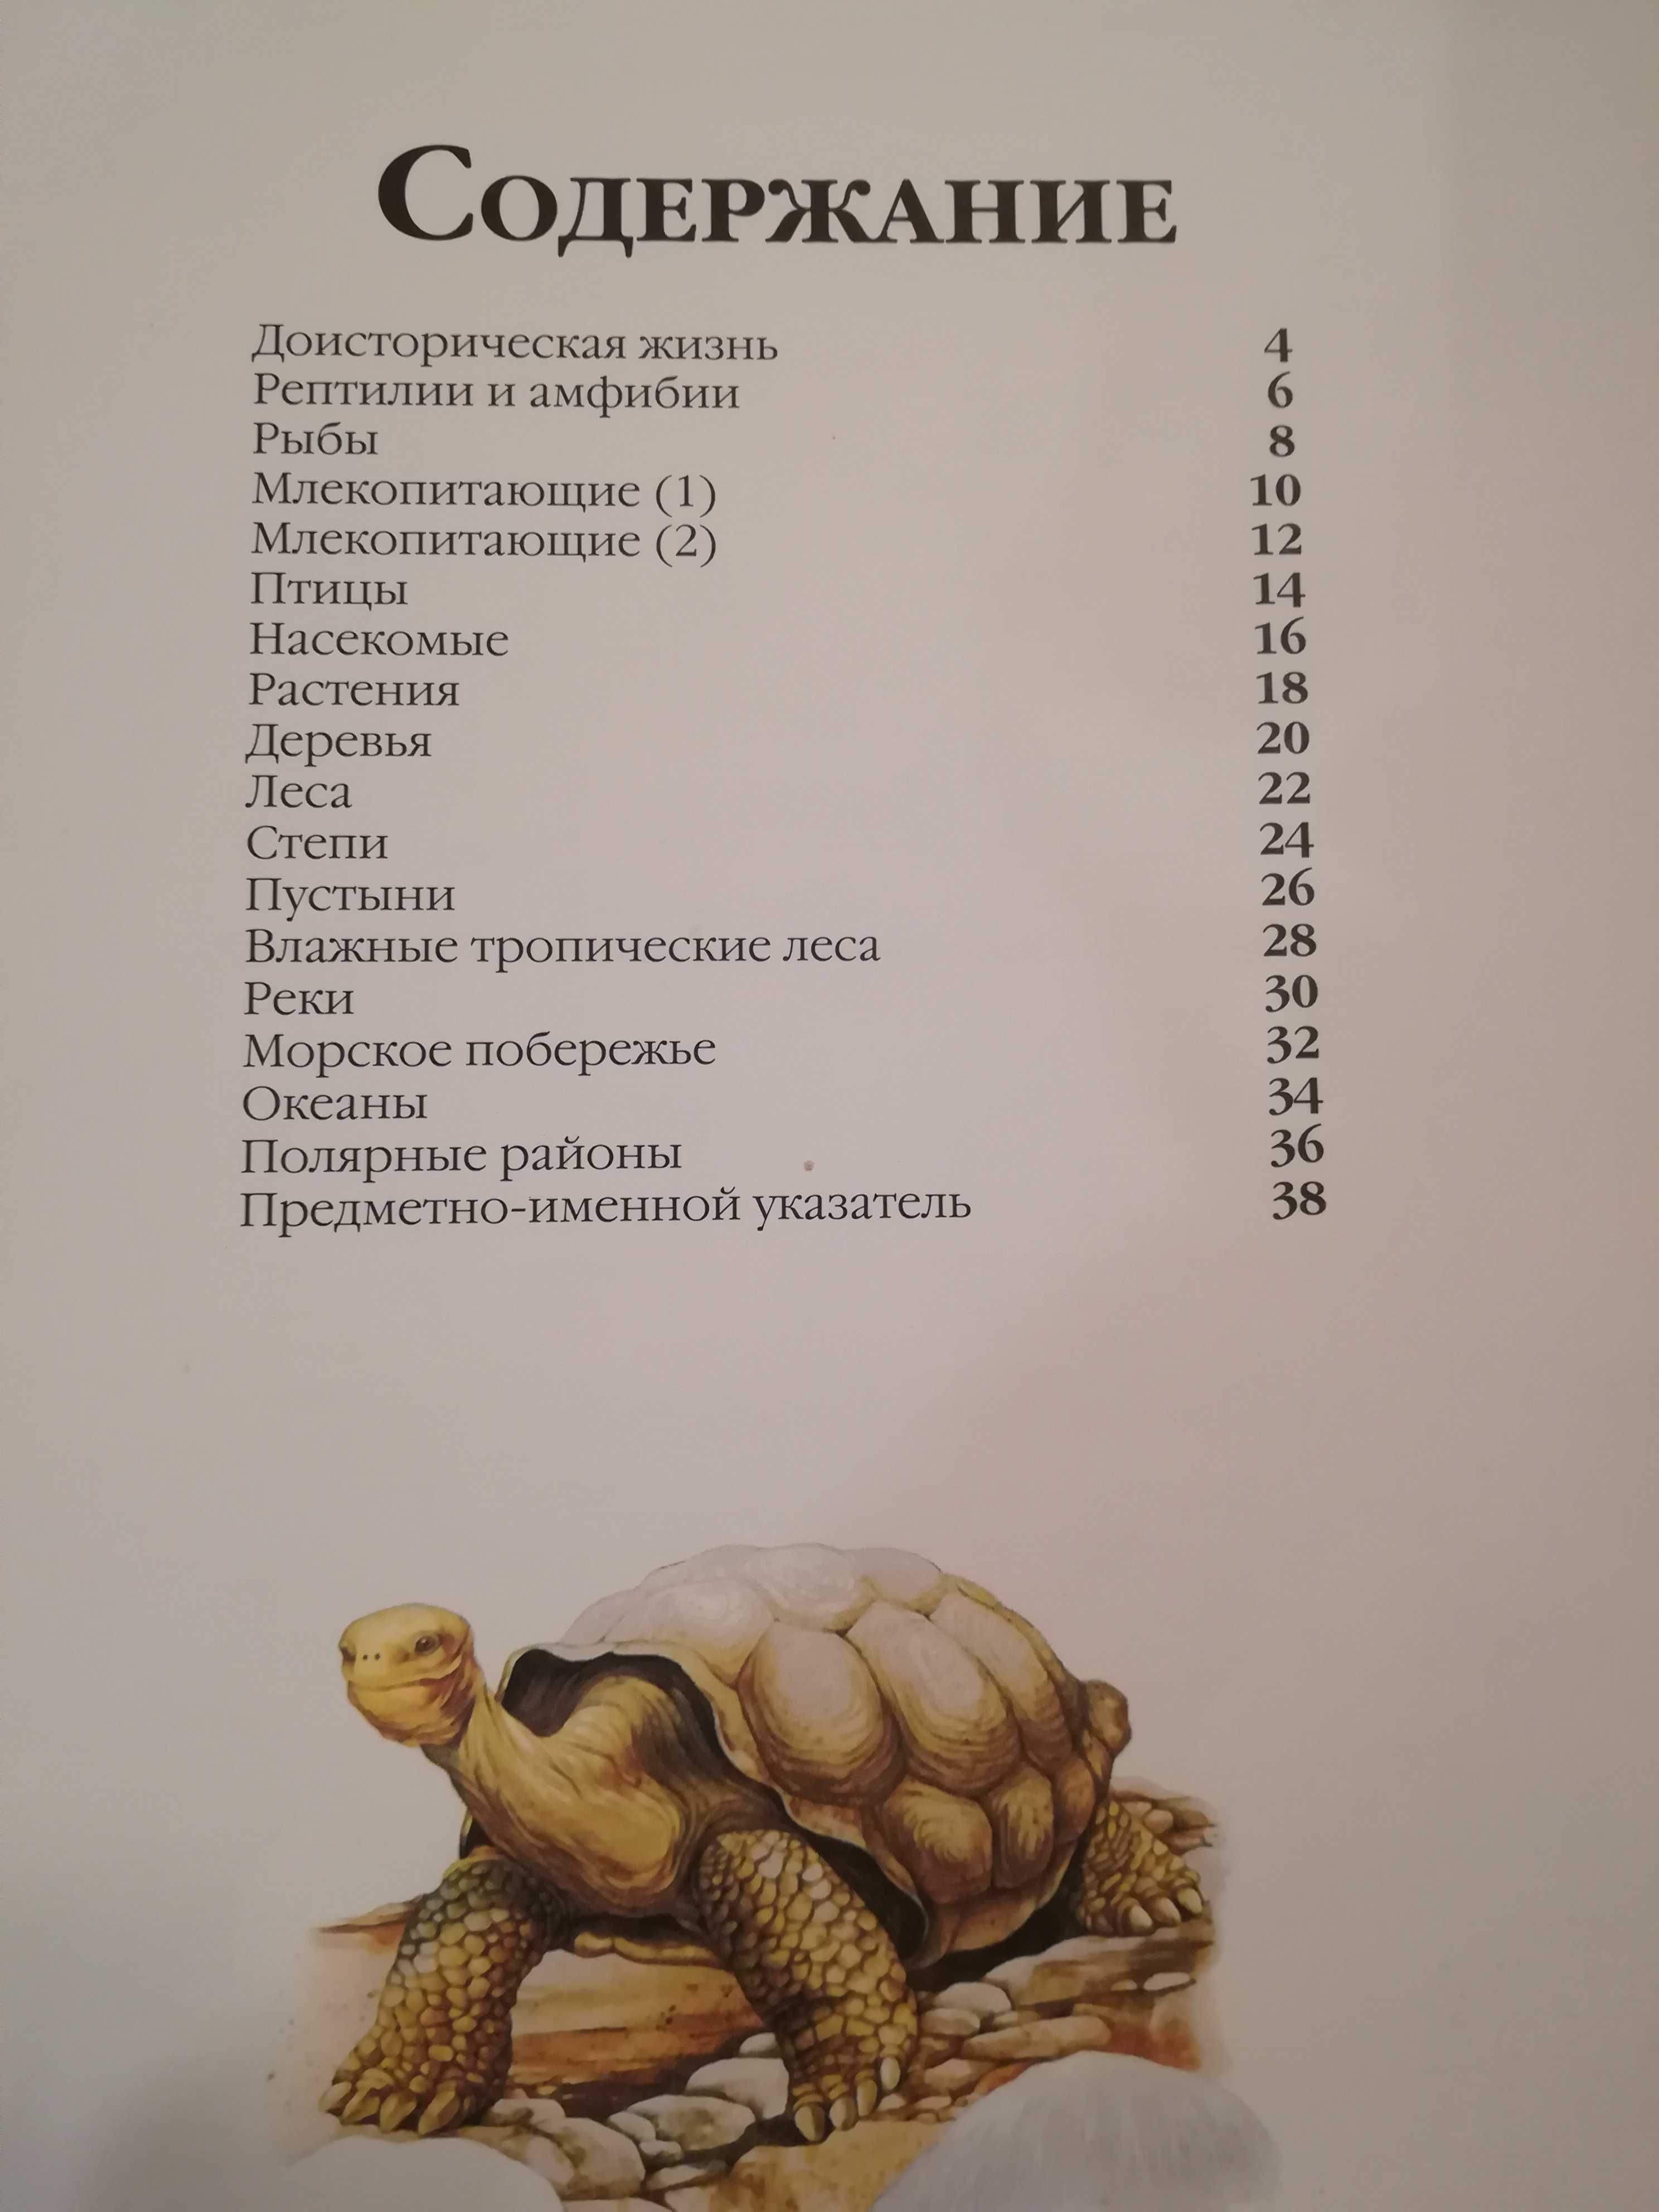 Детская энциклопедия "Живая природа", изд. "Астрель", 2000 г.